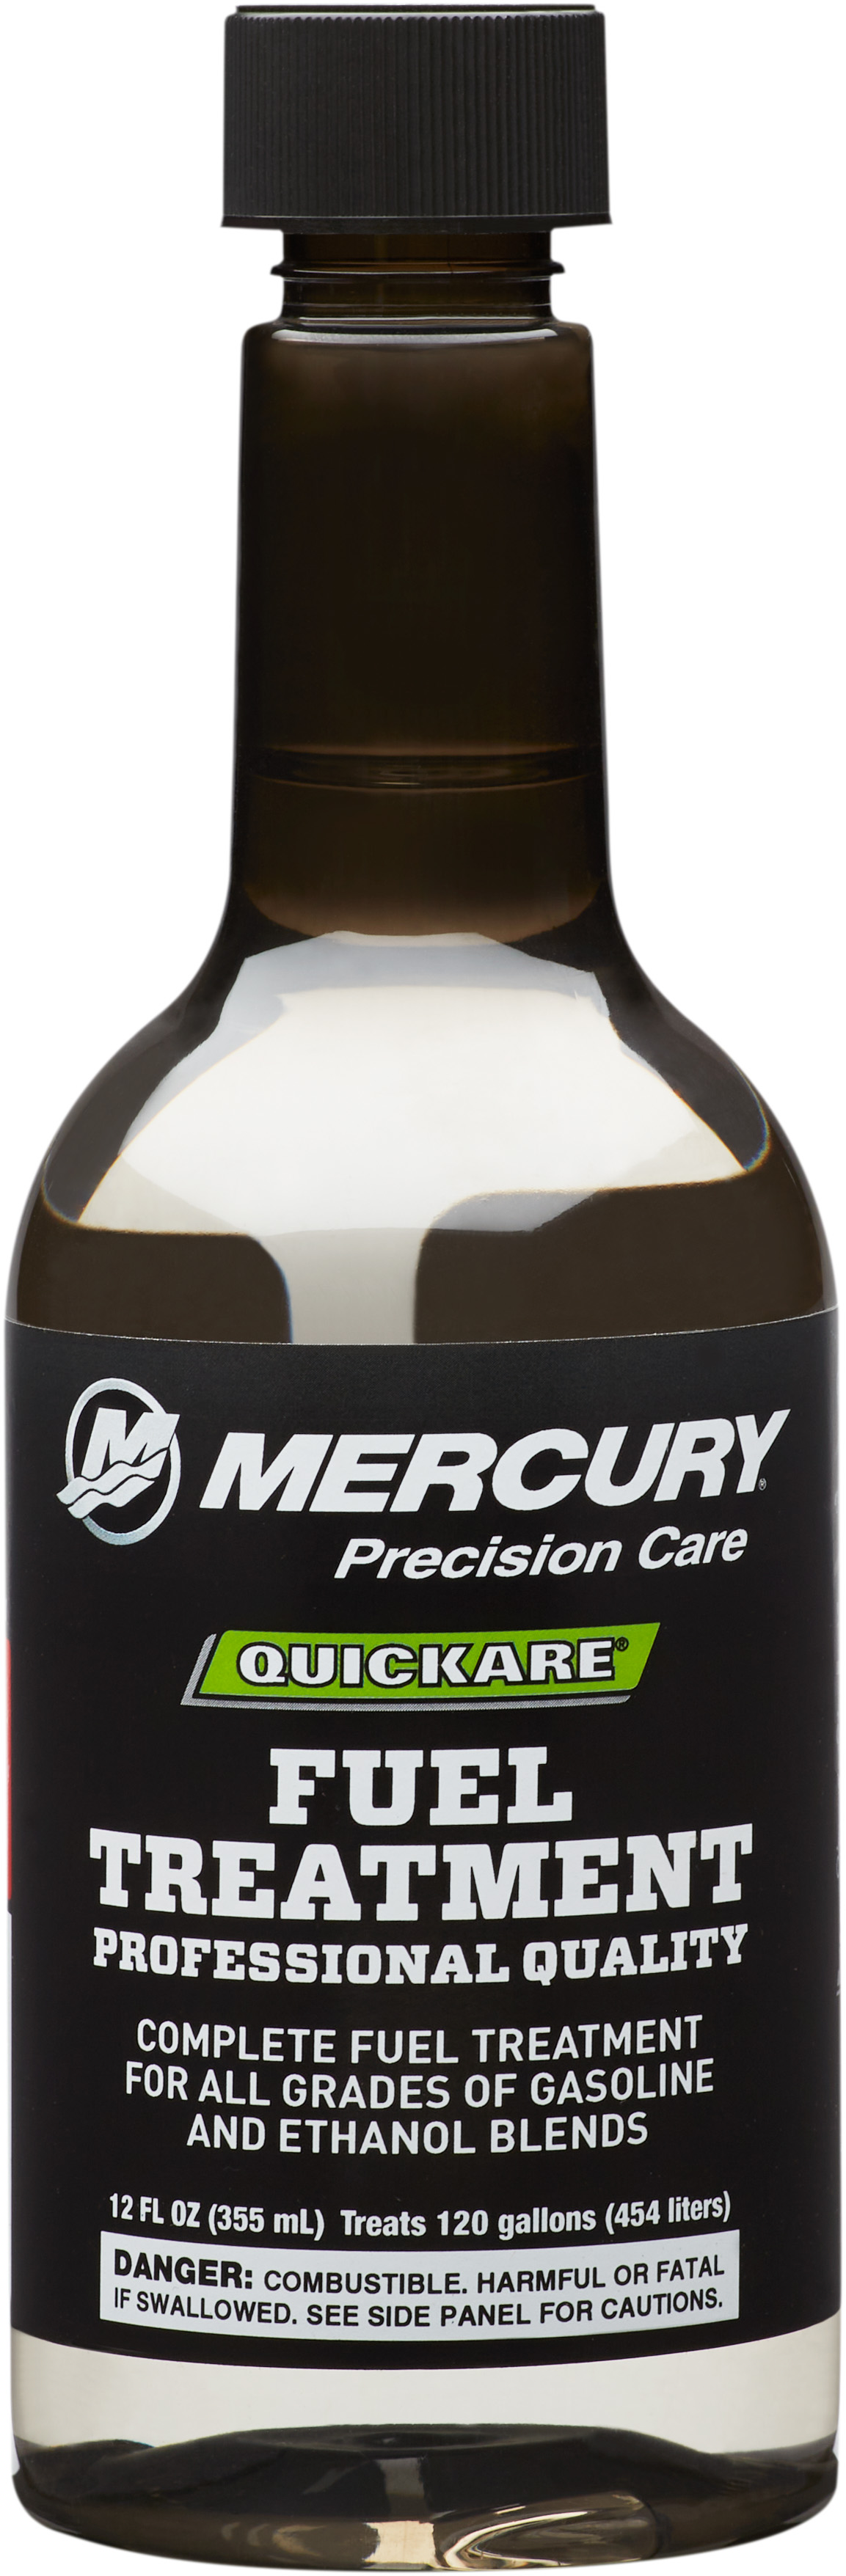 Mercury Quickare